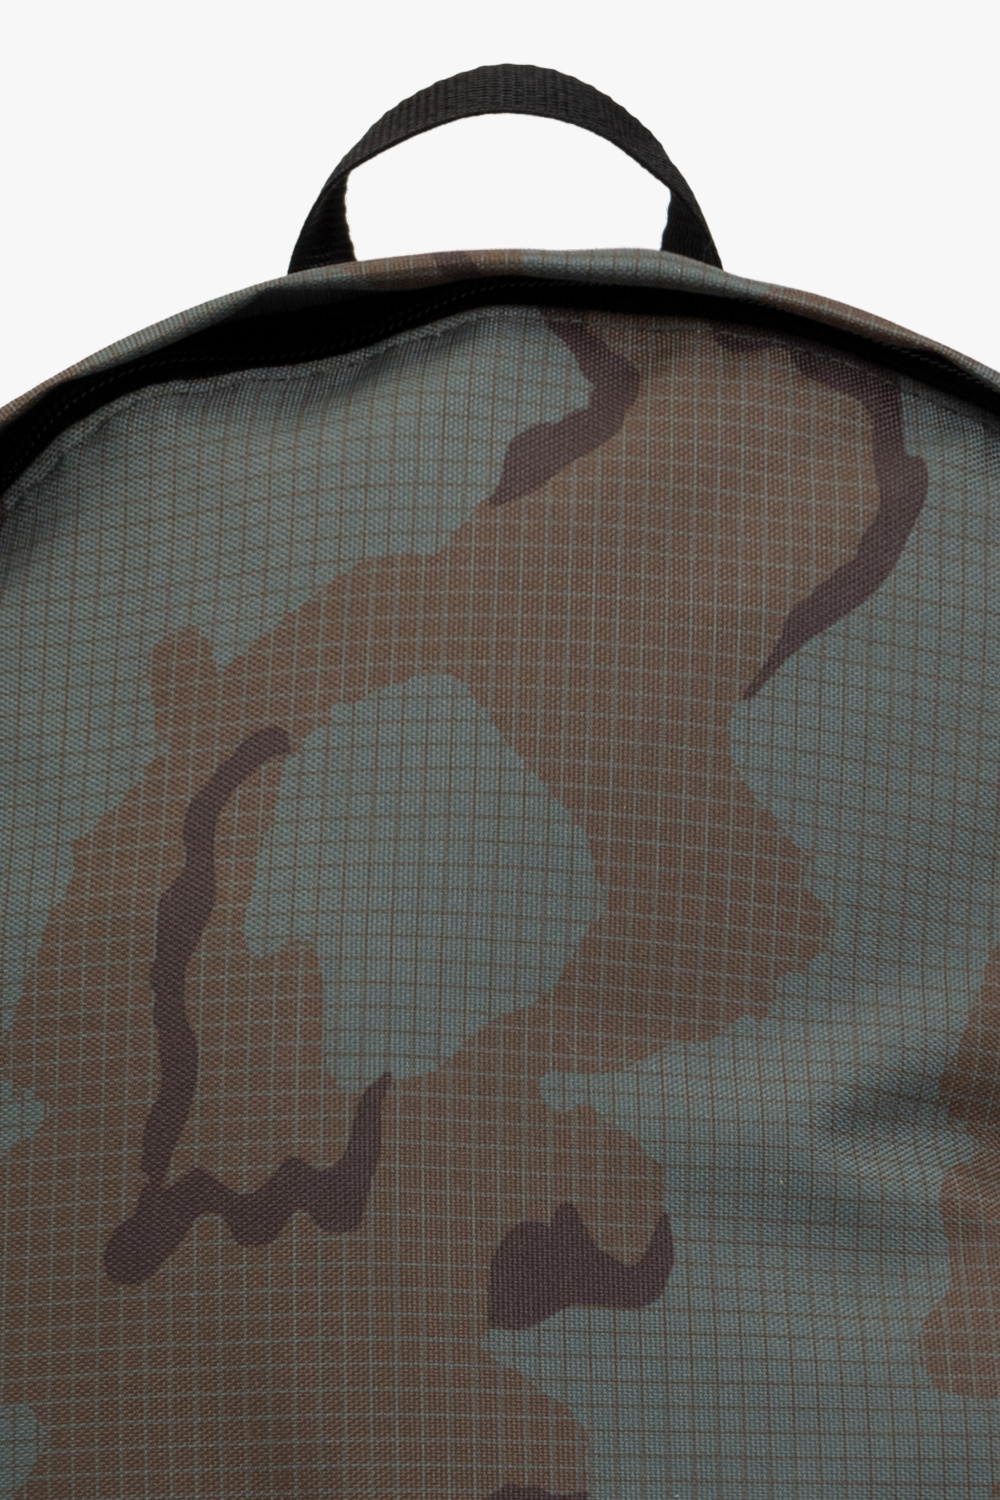 Undercover Saint Laurent monogram round crossbody bag